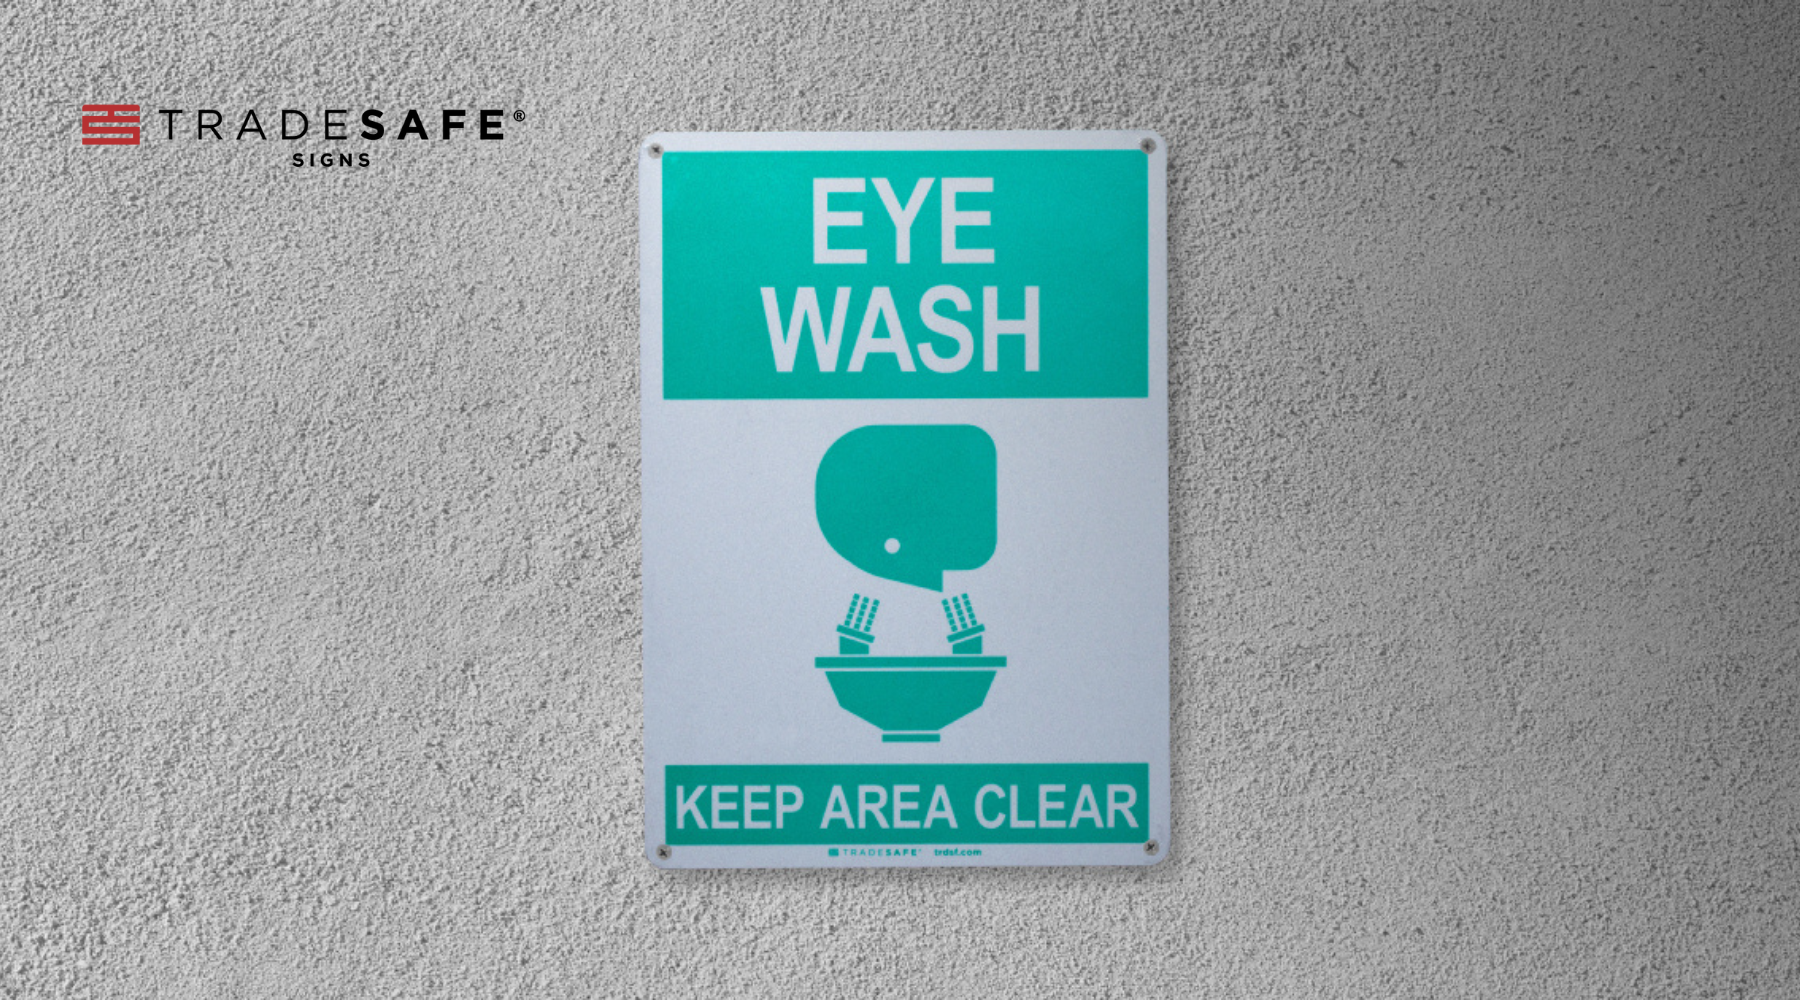 eyewash station sign tradesafe